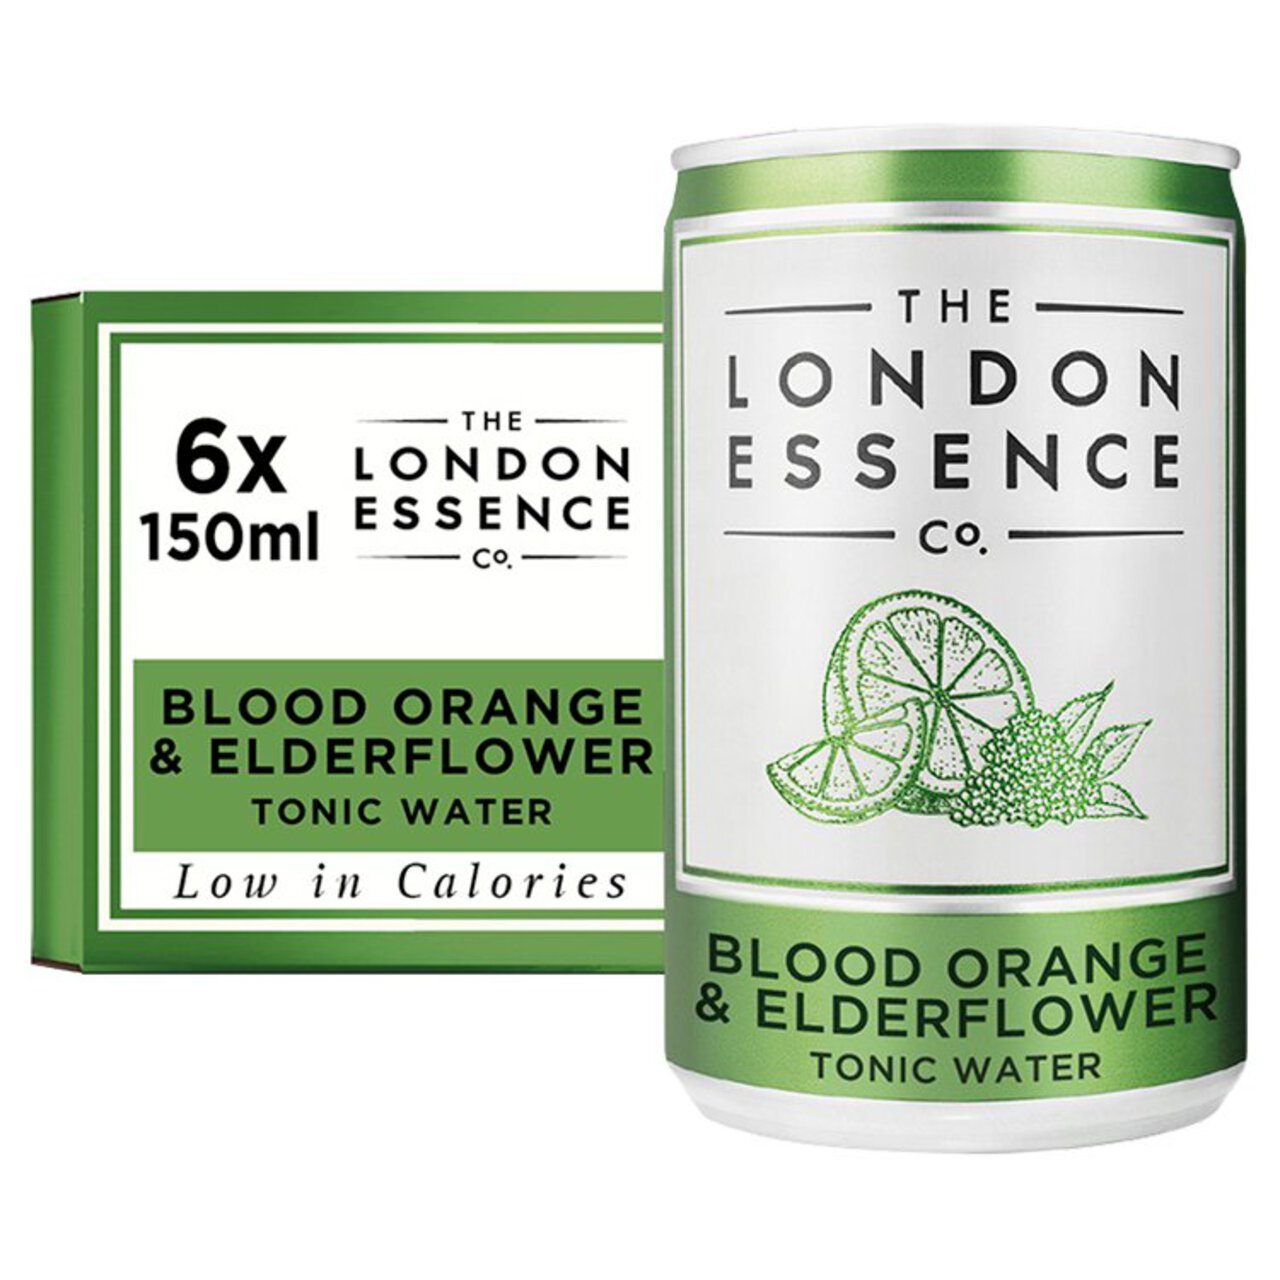 London Essence Co. Blood Orange & Elderflower Tonic Water Cans 6 x 150ml